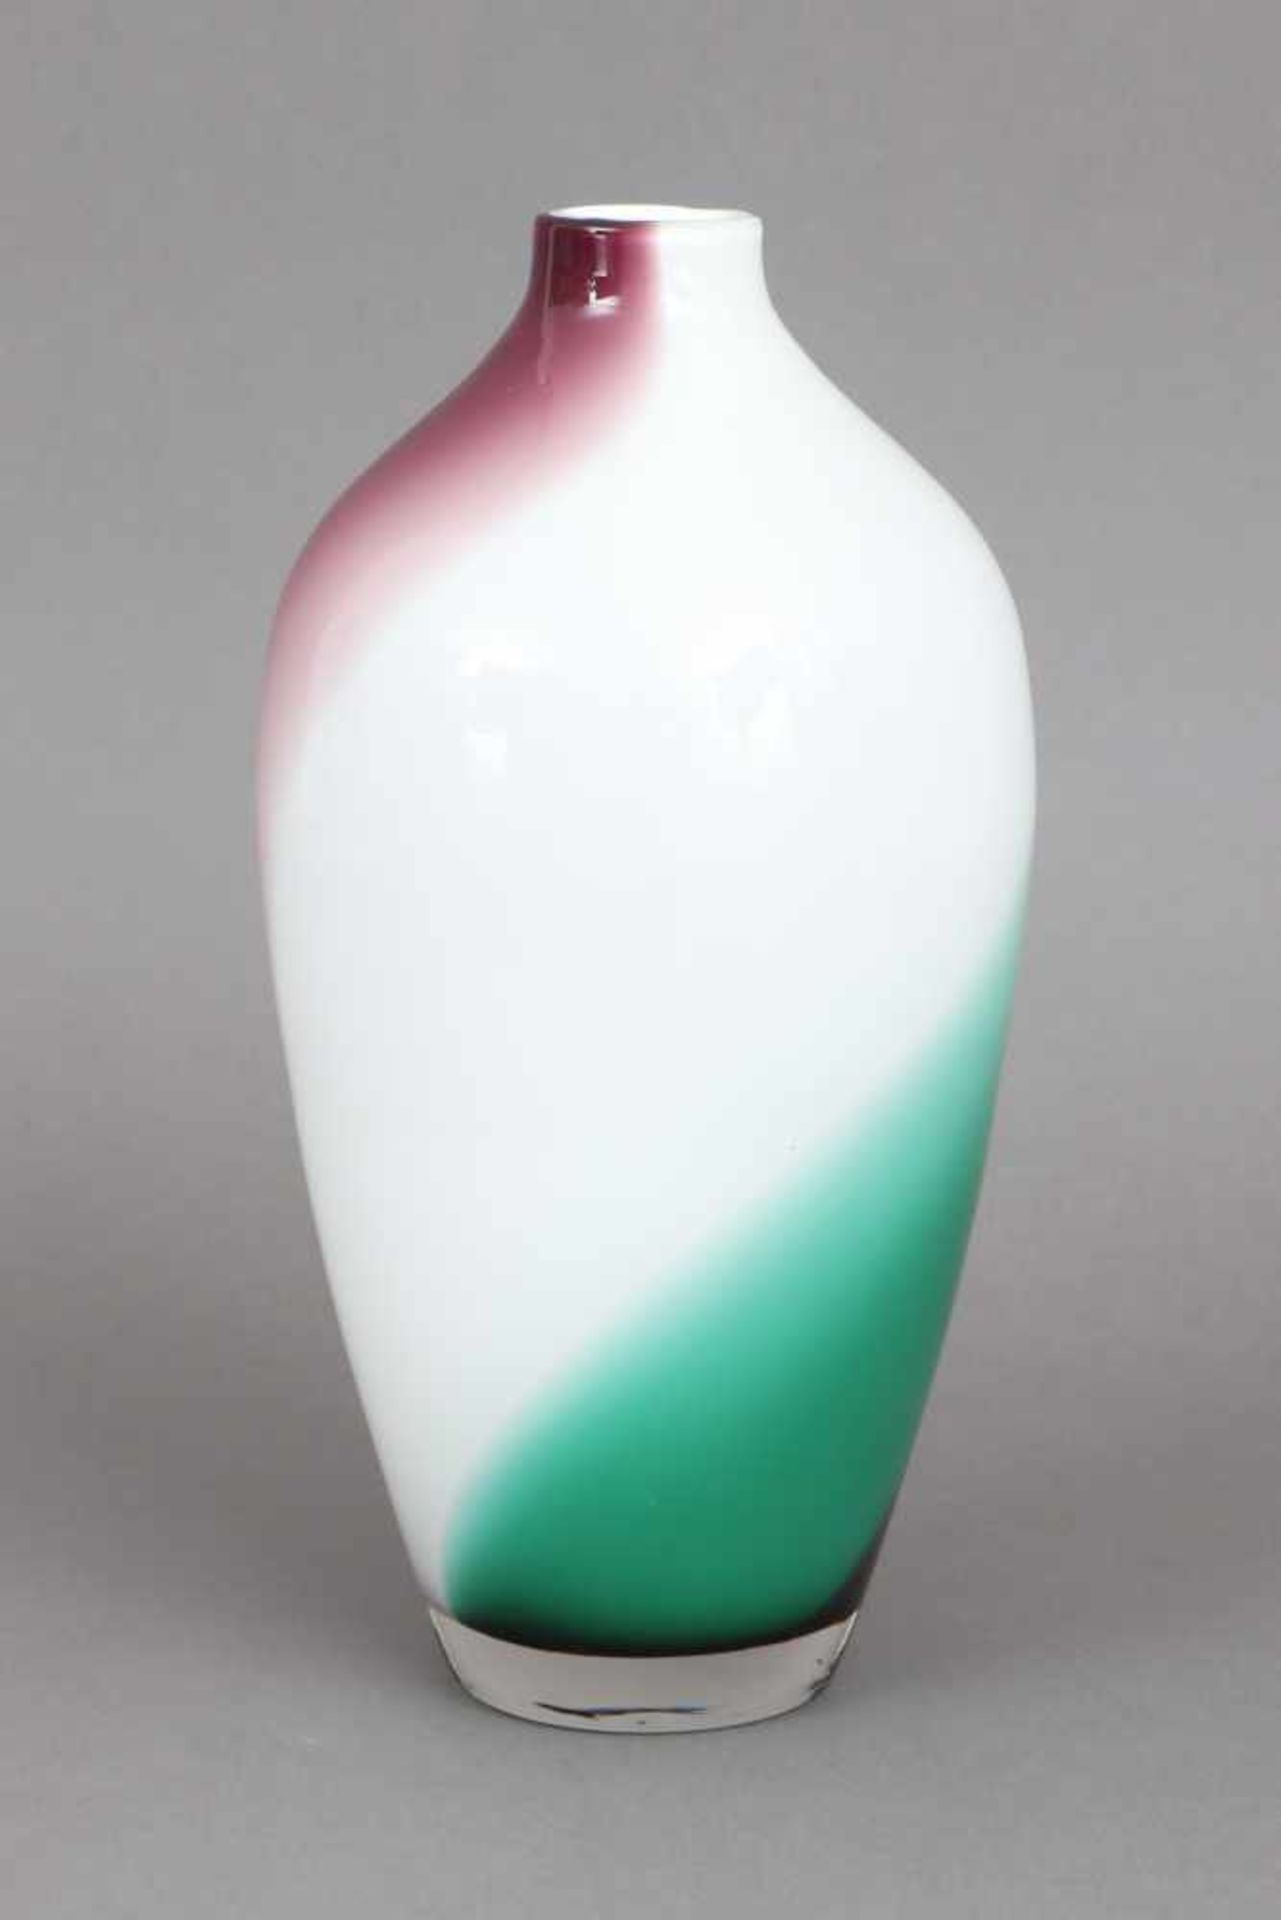 Glasvase in Meiping-Formweiß, grün und violett überfangenes Glas, ovoide Form, unbekannter - Bild 2 aus 2